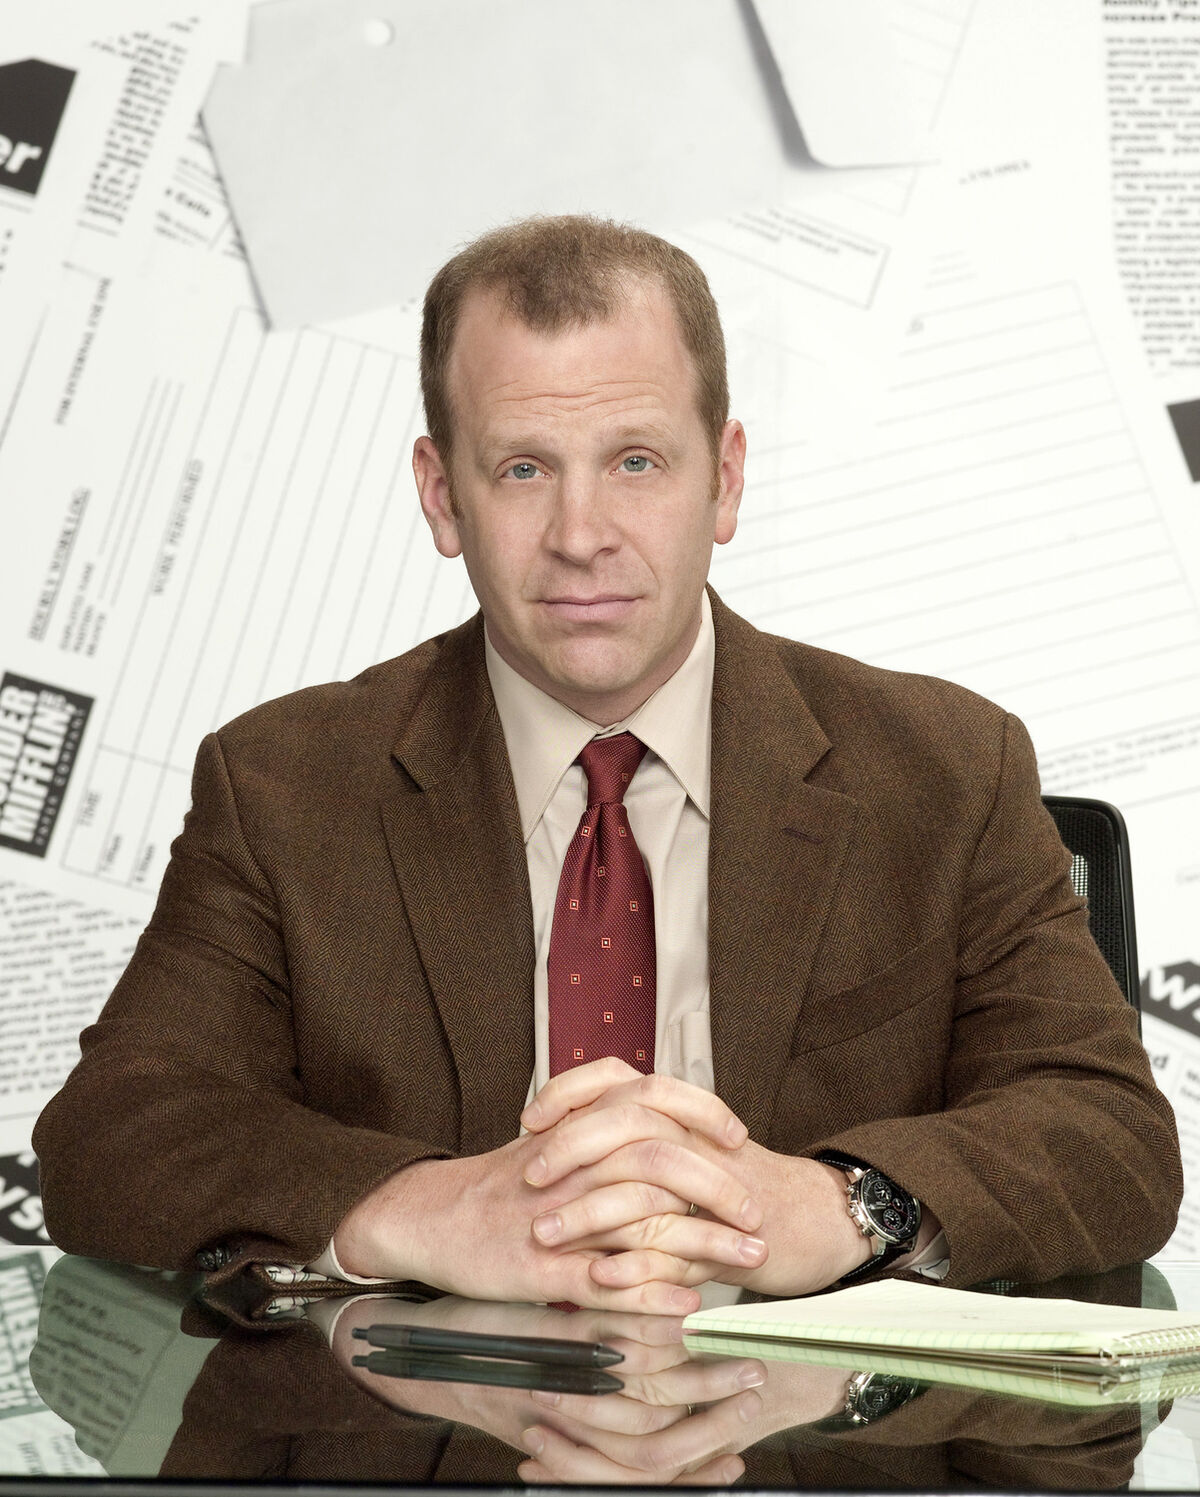 Is Toby Flenderson the Scranton Strangler? 'The Office' Star Paul  Lieberstein Addresses Fan Theories